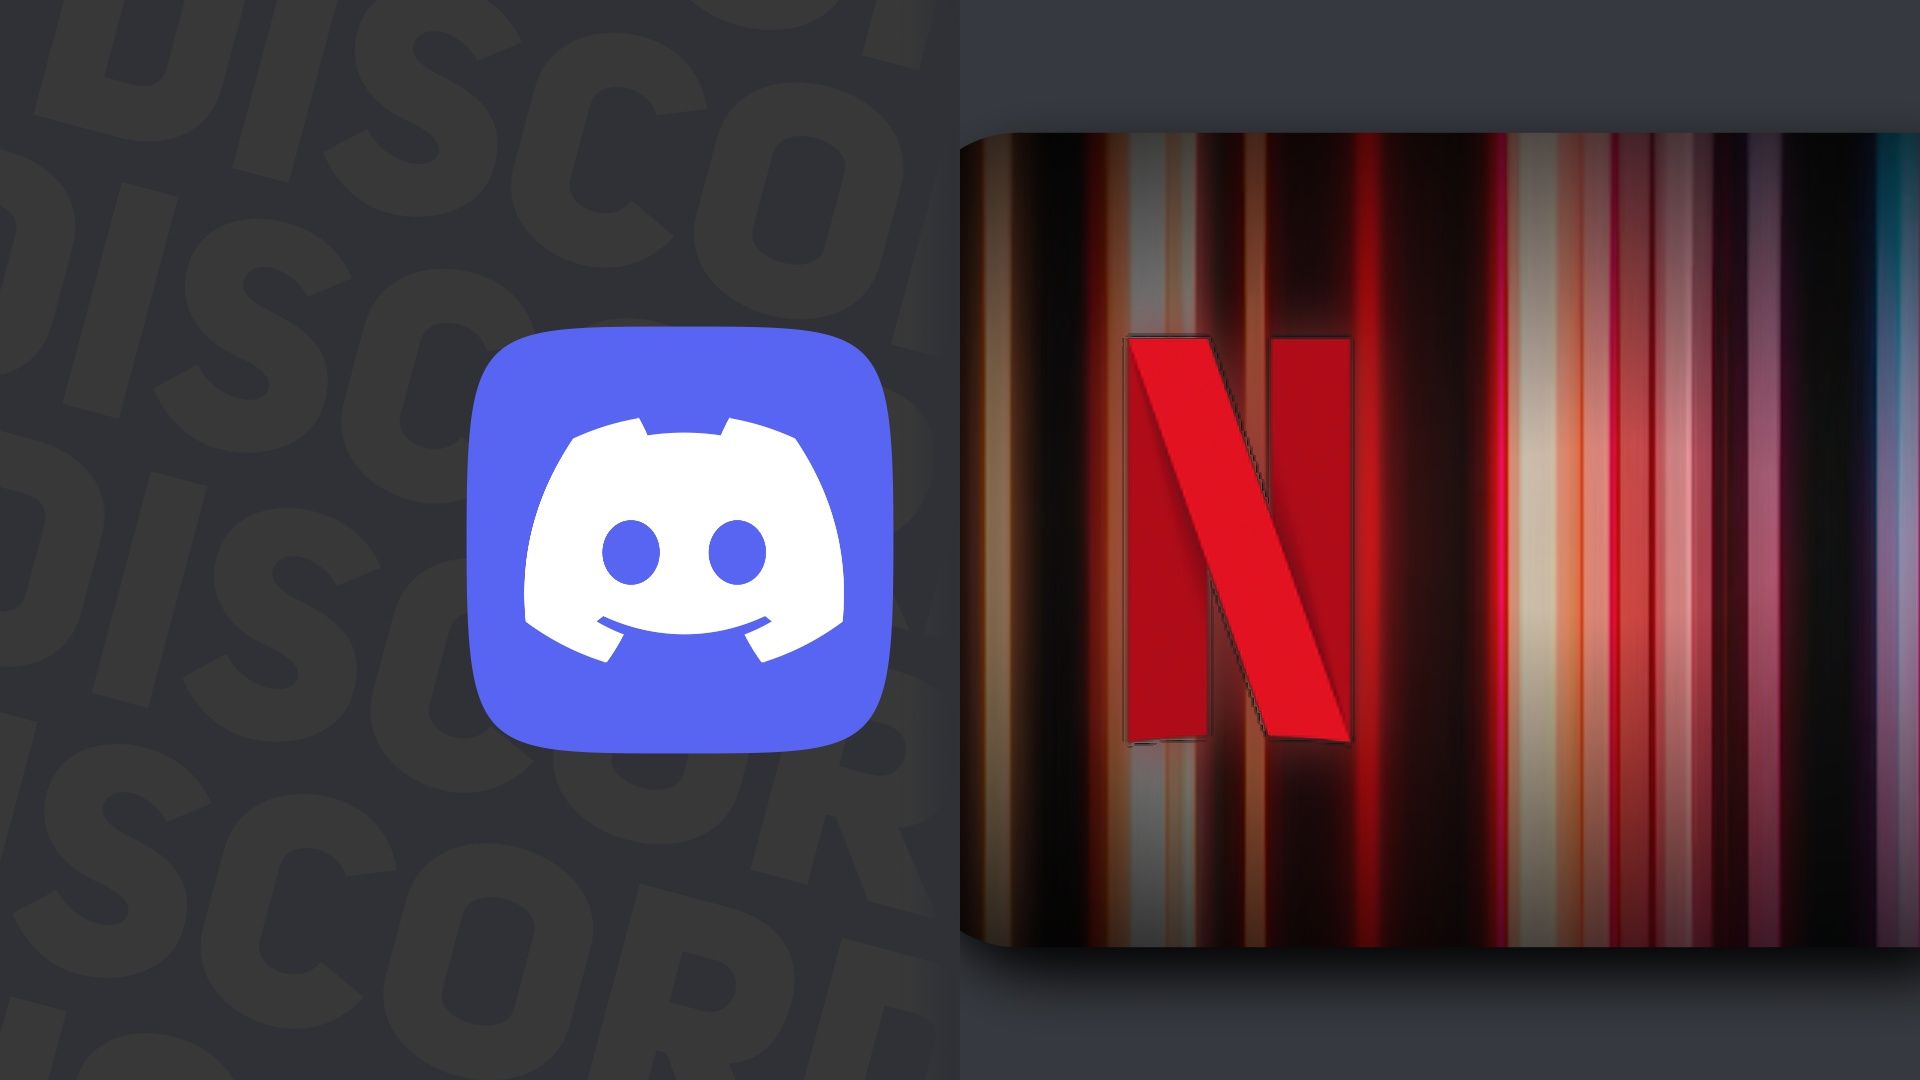 O logotipo do Discord colocado ao lado do logotipo da Netflix